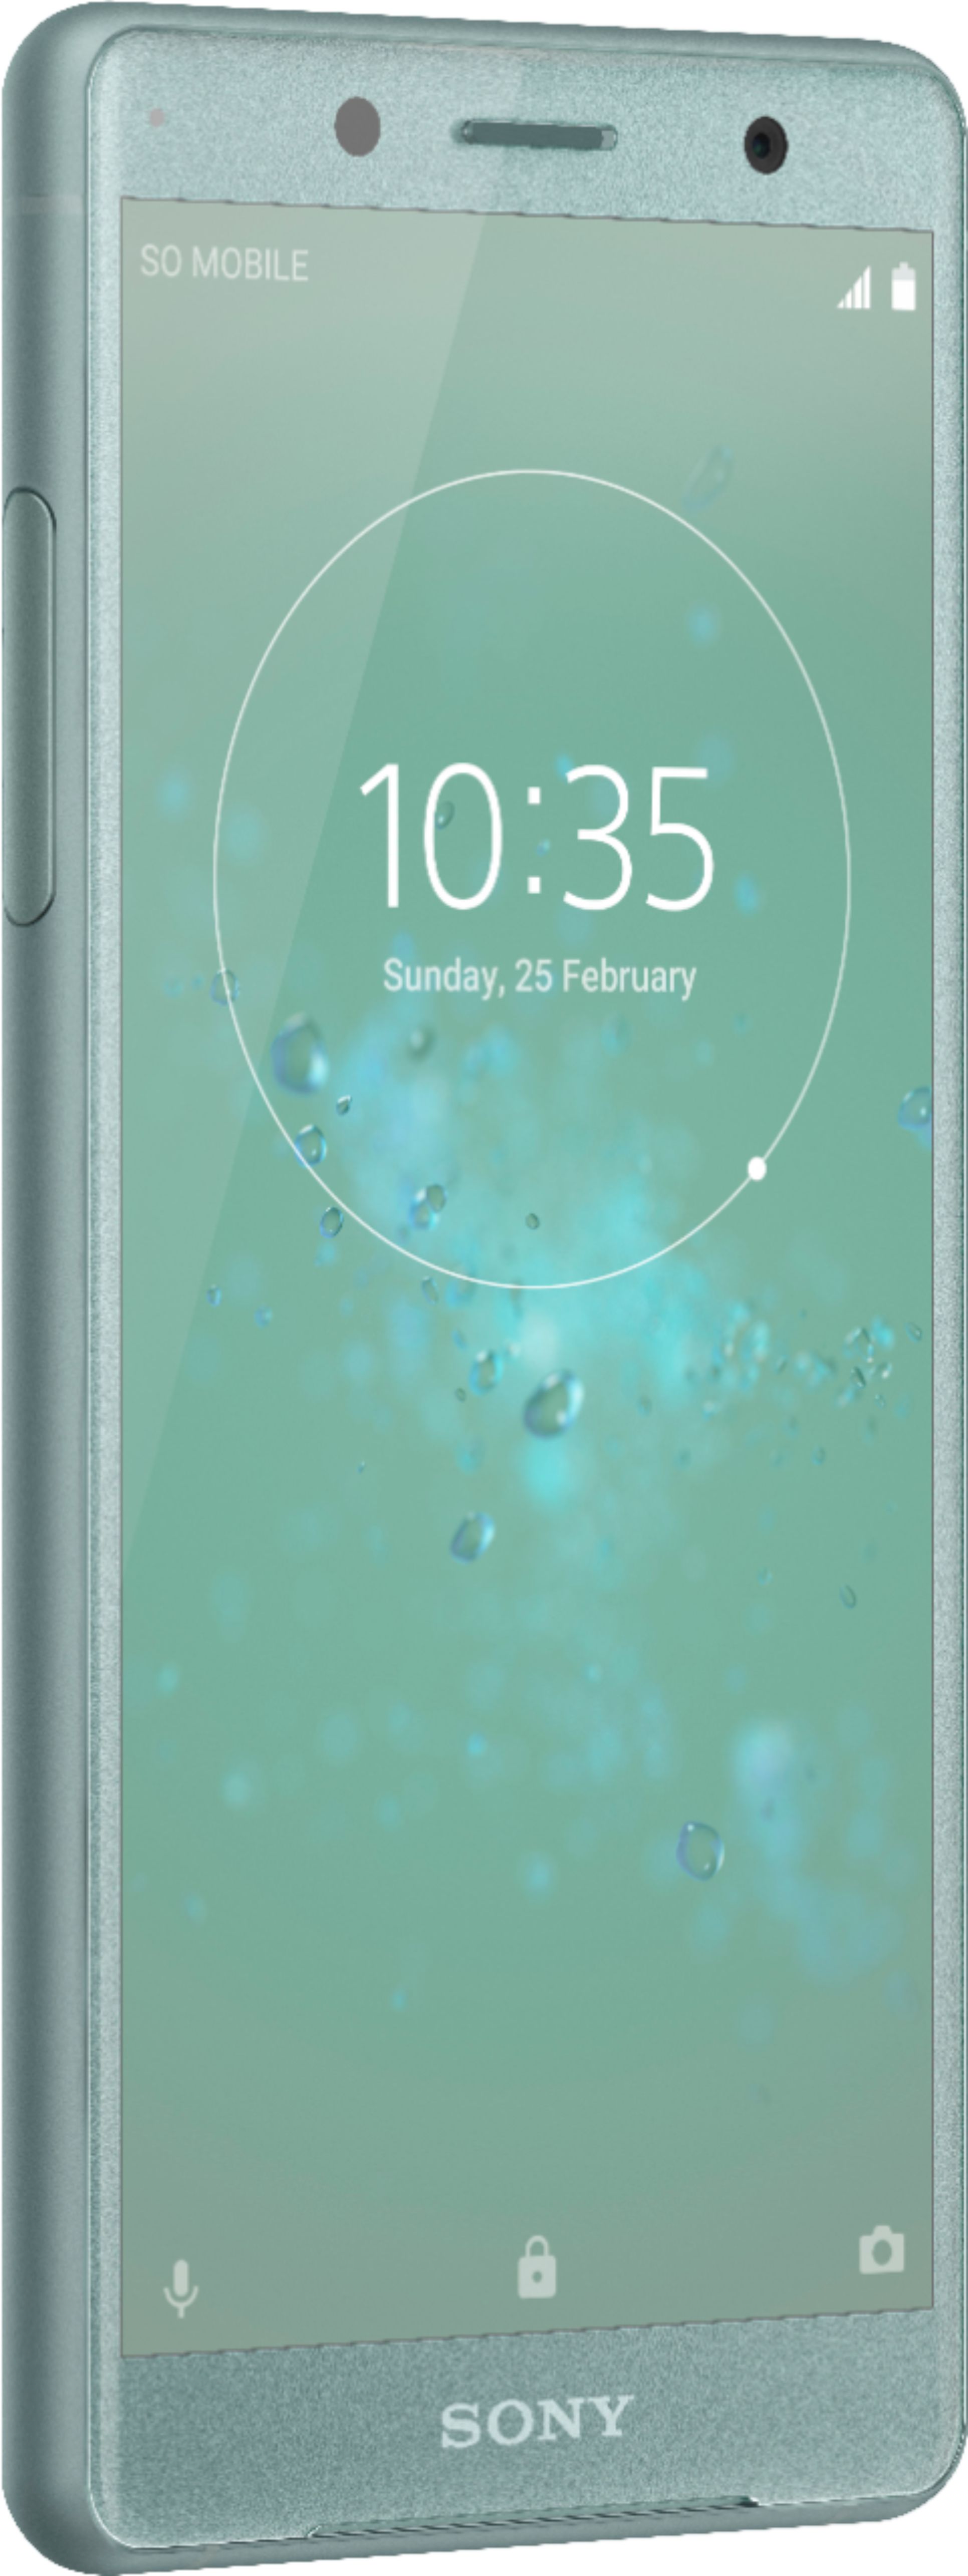 vooroordeel ik ben gelukkig voering Best Buy: Sony XPERIA XZ2 Compact with 64GB Memory Cell Phone (Unlocked)  Moss Green H8314